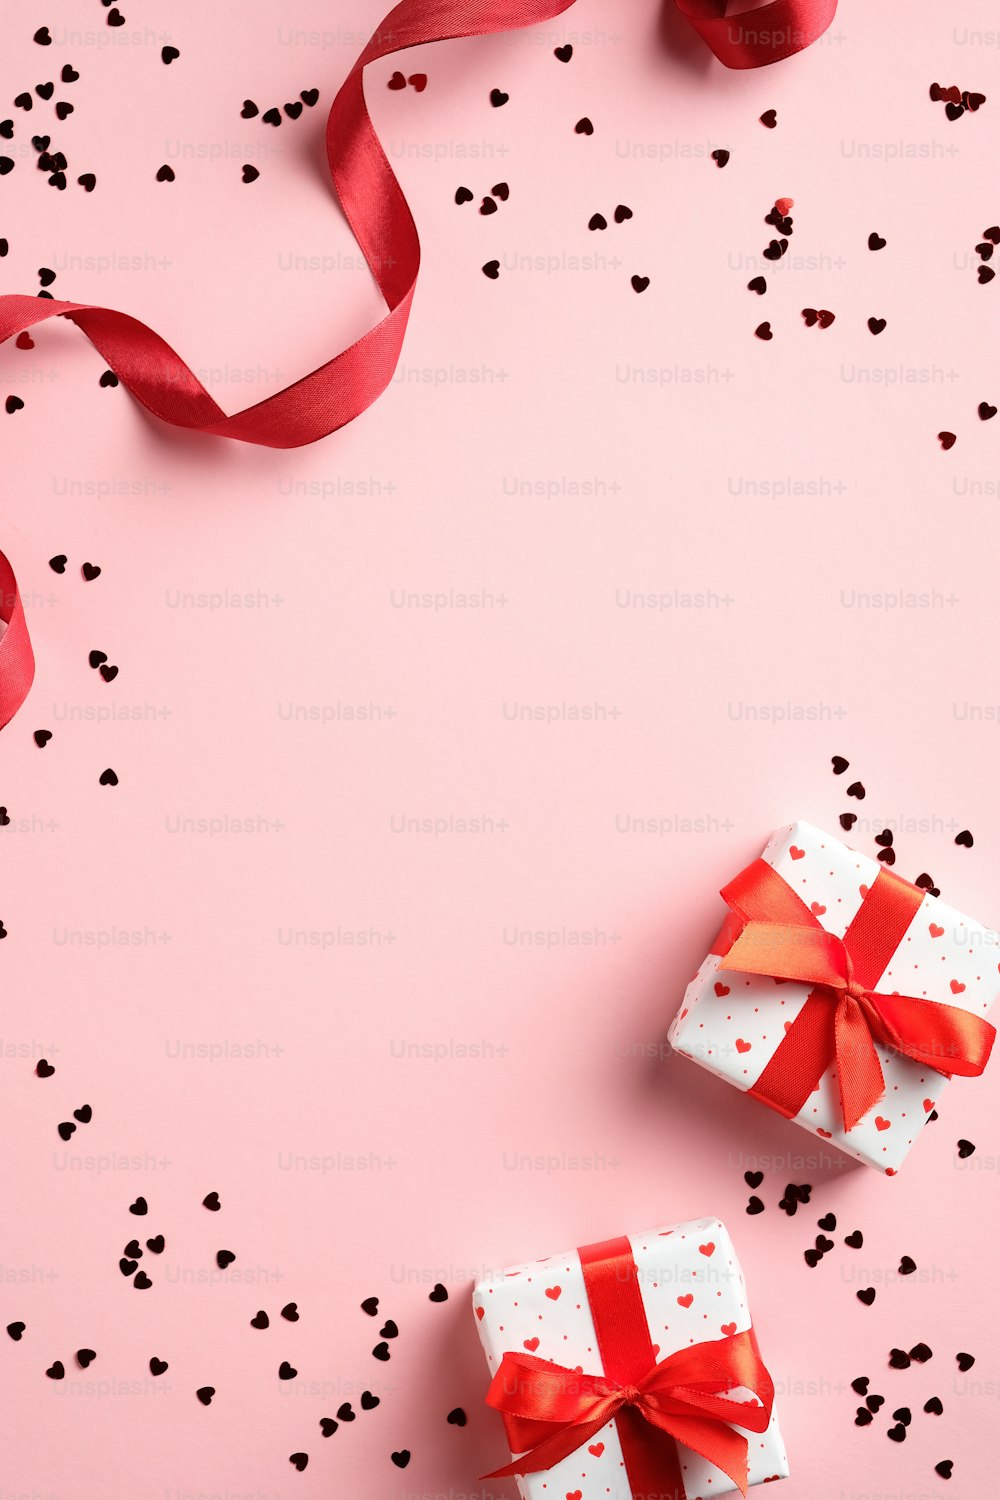 Modello di biglietto di San Valentino con regali, nastro rosso, coriandoli su sfondo rosa. Posa piatta, vista dall'alto, spazio di copia.